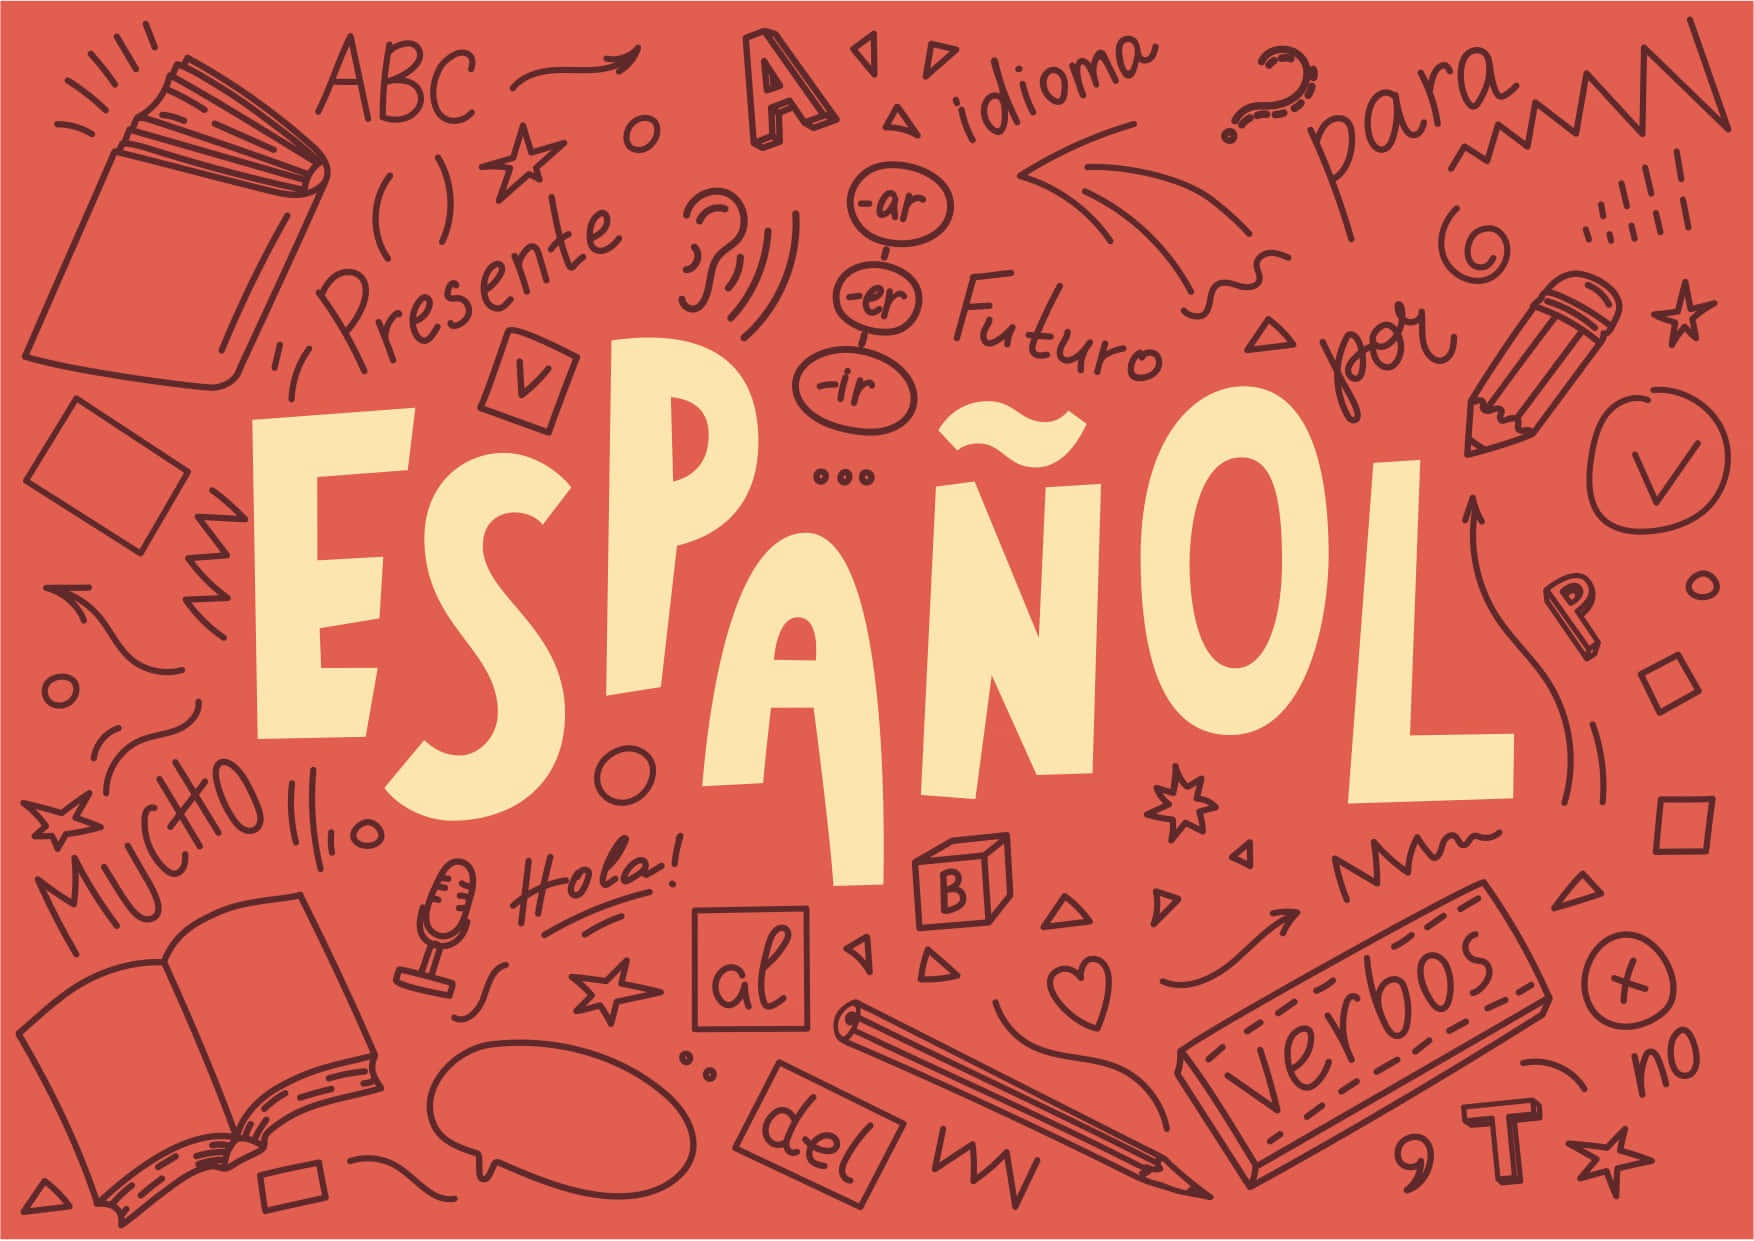 Spansk ord med tegninger og symboler